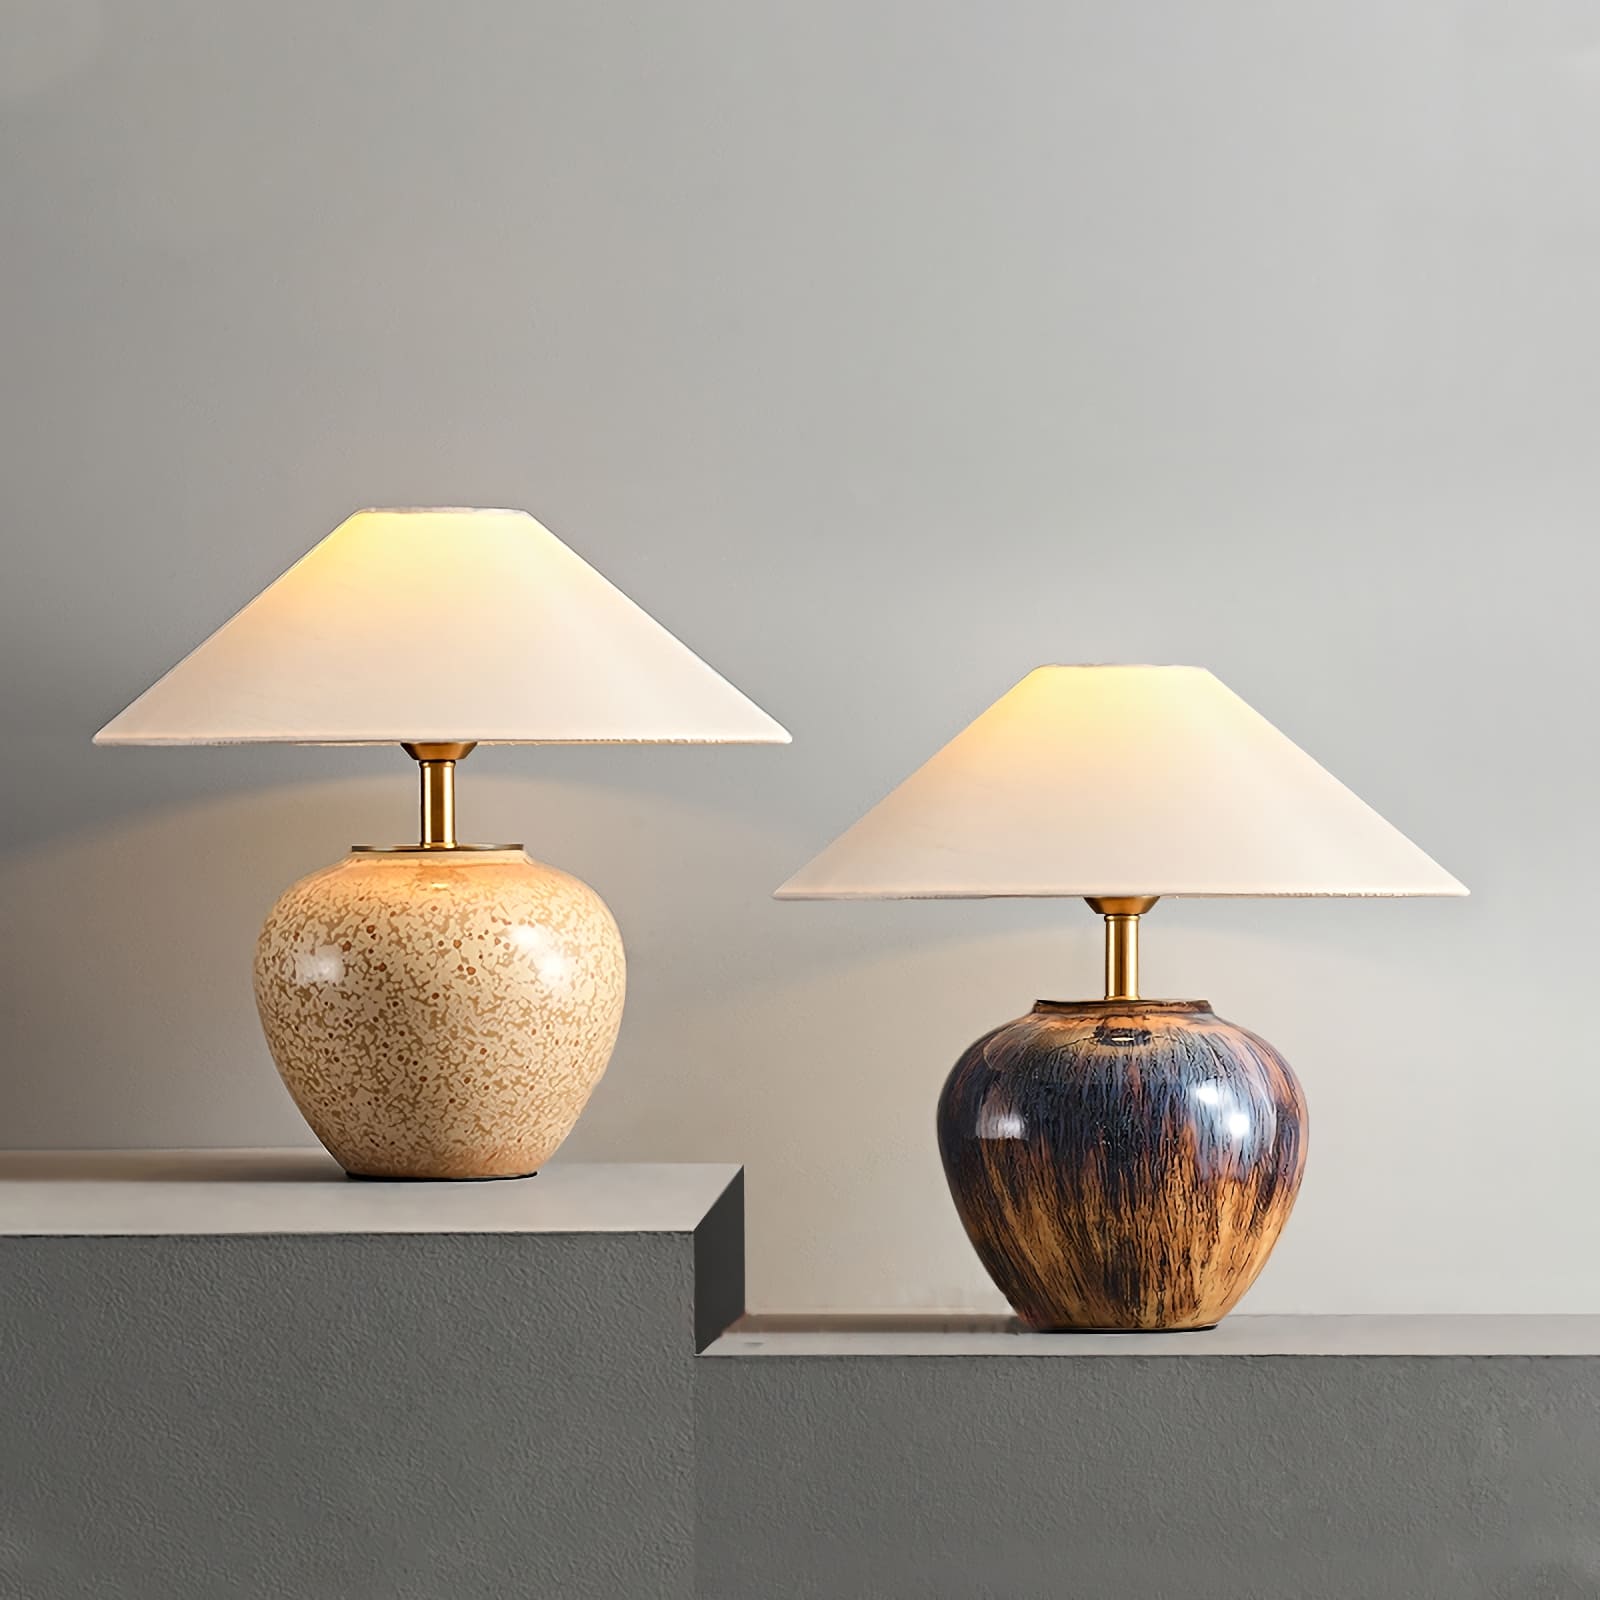 Glazed ceramic table lamp - Vinlighting